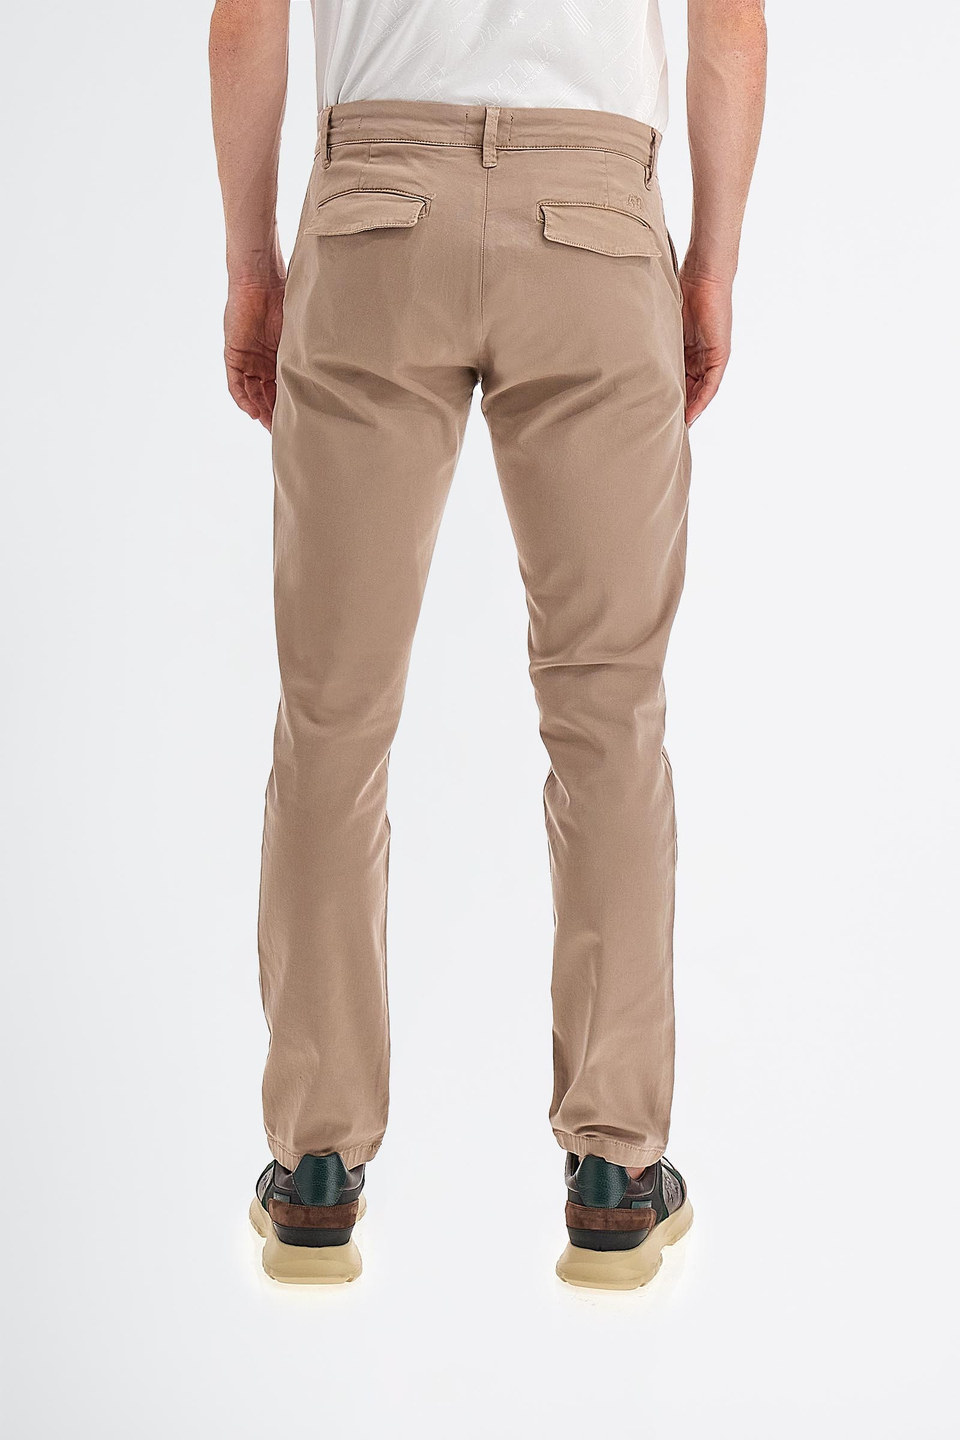 Pantalone da uomo in cotone twill stretch modello chino slim fit | La Martina - Official Online Shop